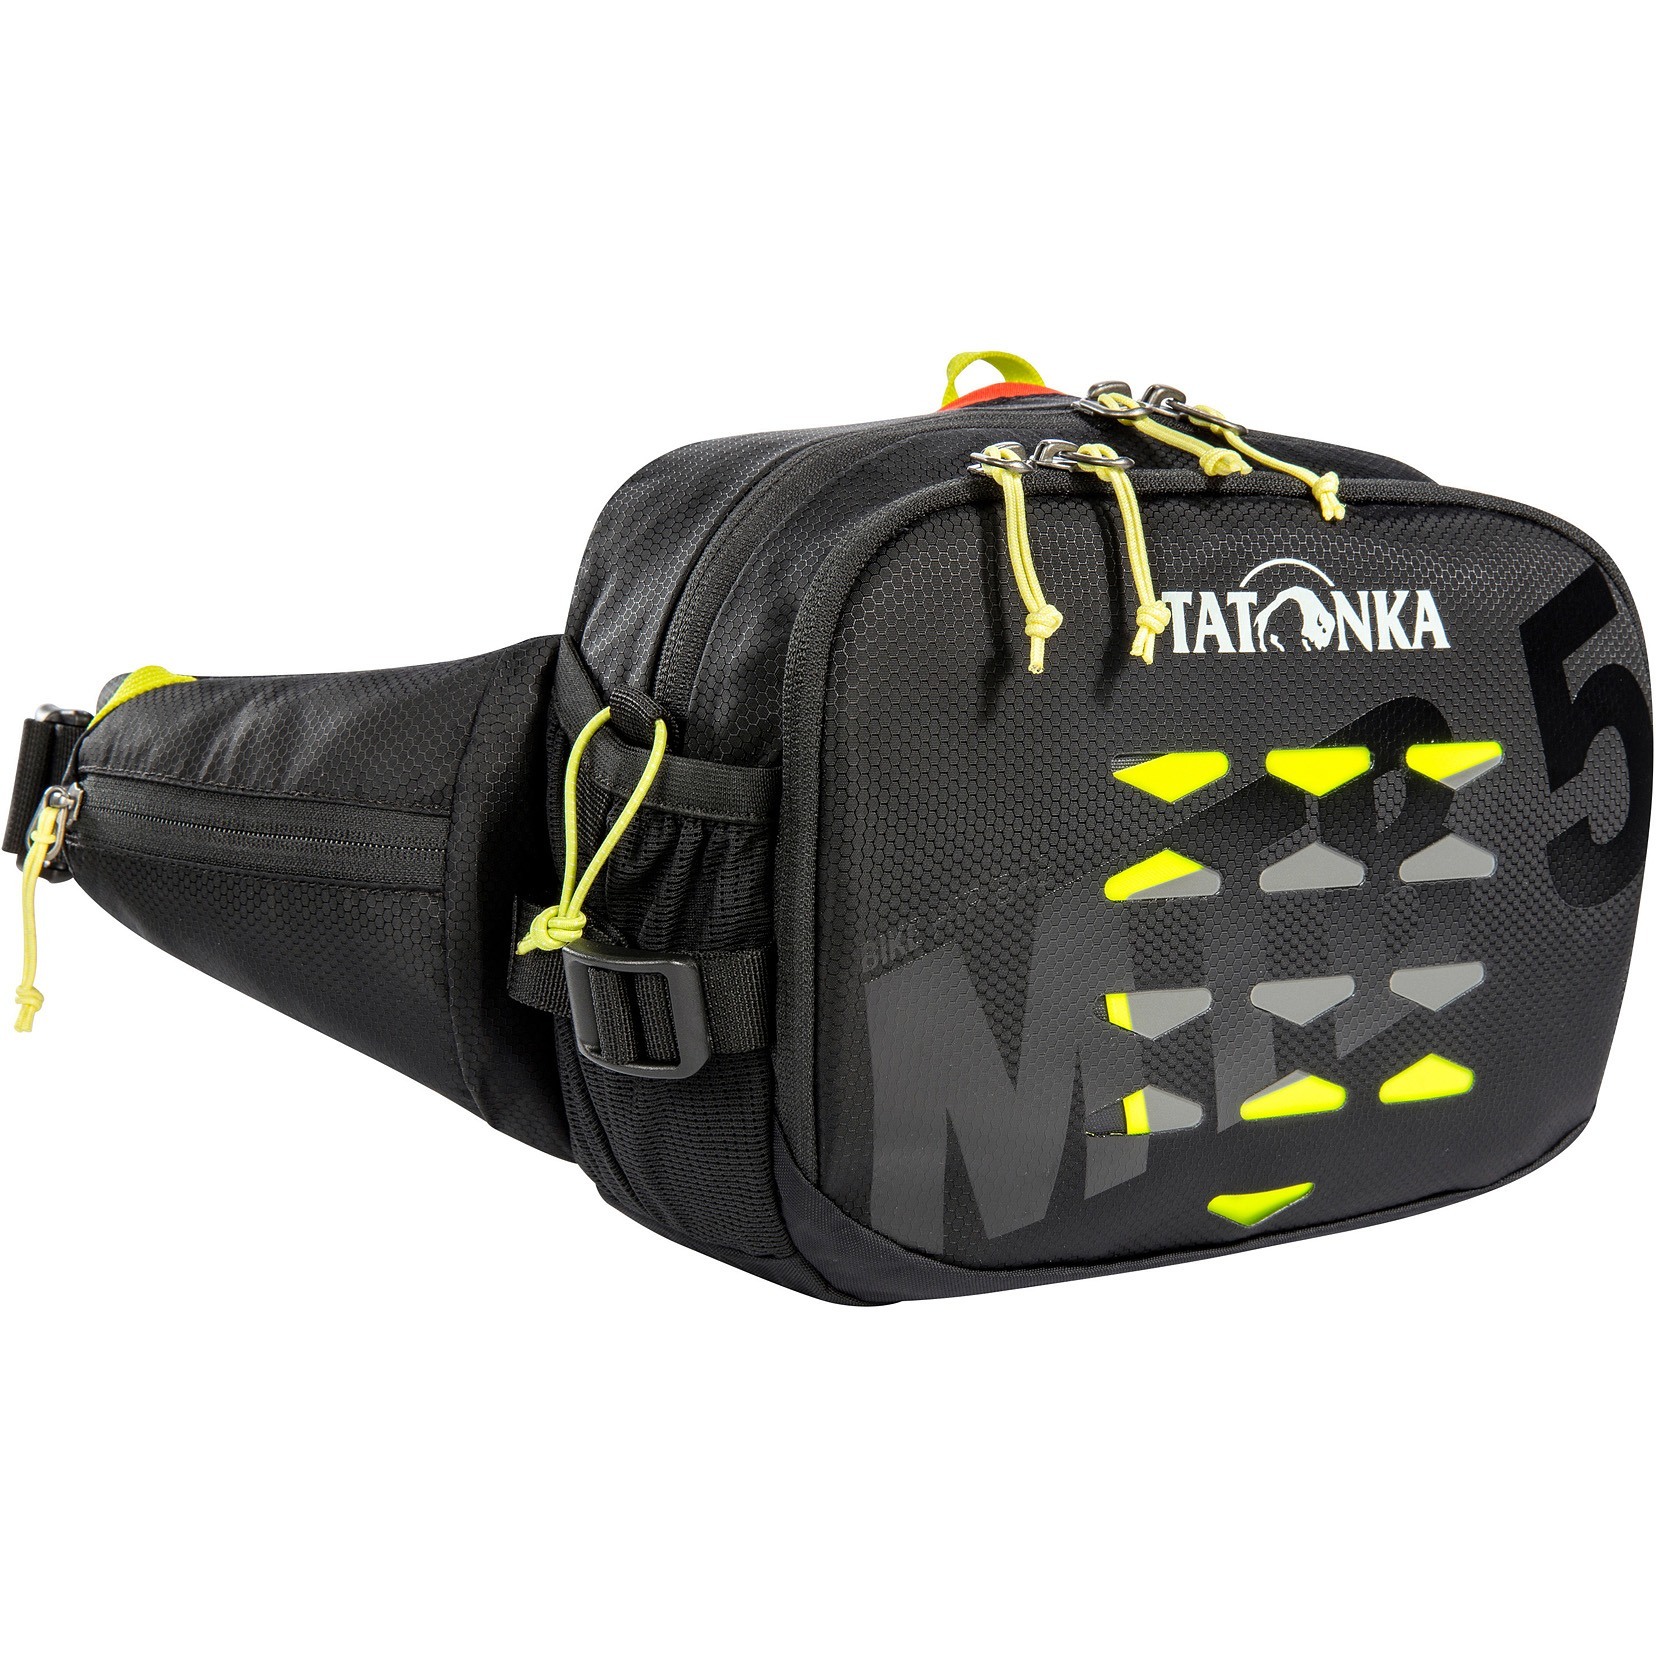 Produktbild von Tatonka Bike Hip Bag MTB 5 - Hüfttasche - schwarz